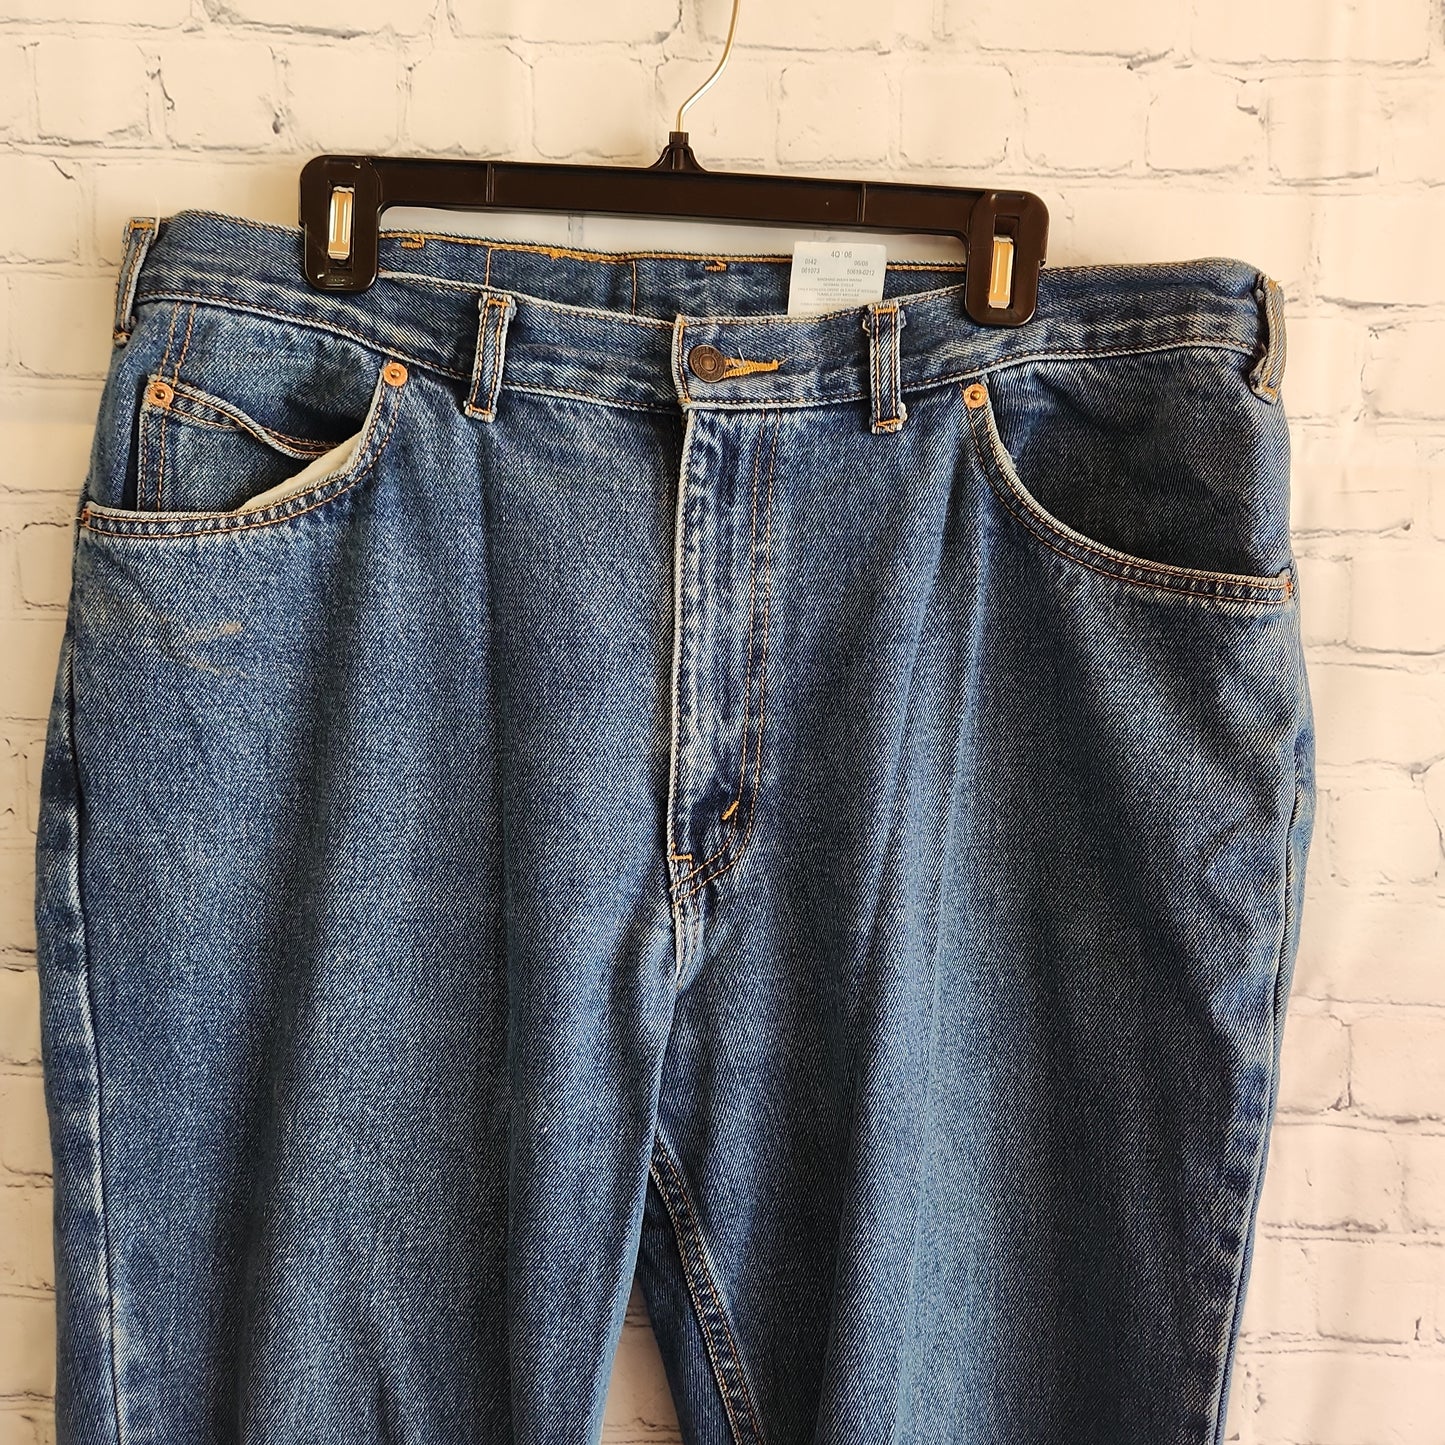 Vintage Levi's Orange Tab Jeans Light Washed - 38 x 34